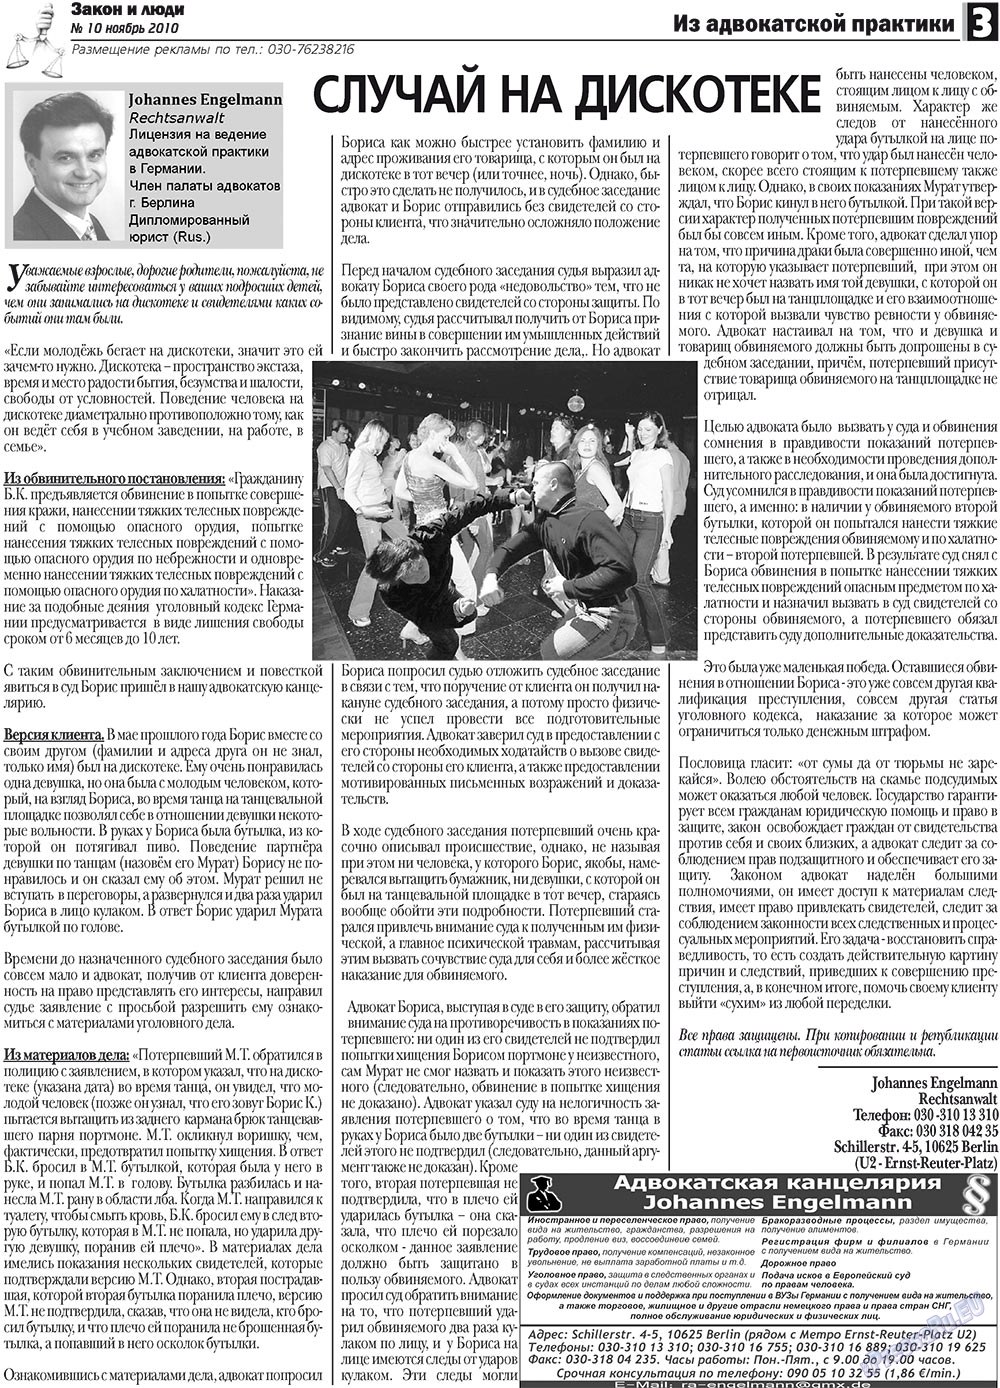 Закон и люди, газета. 2010 №10 стр.3